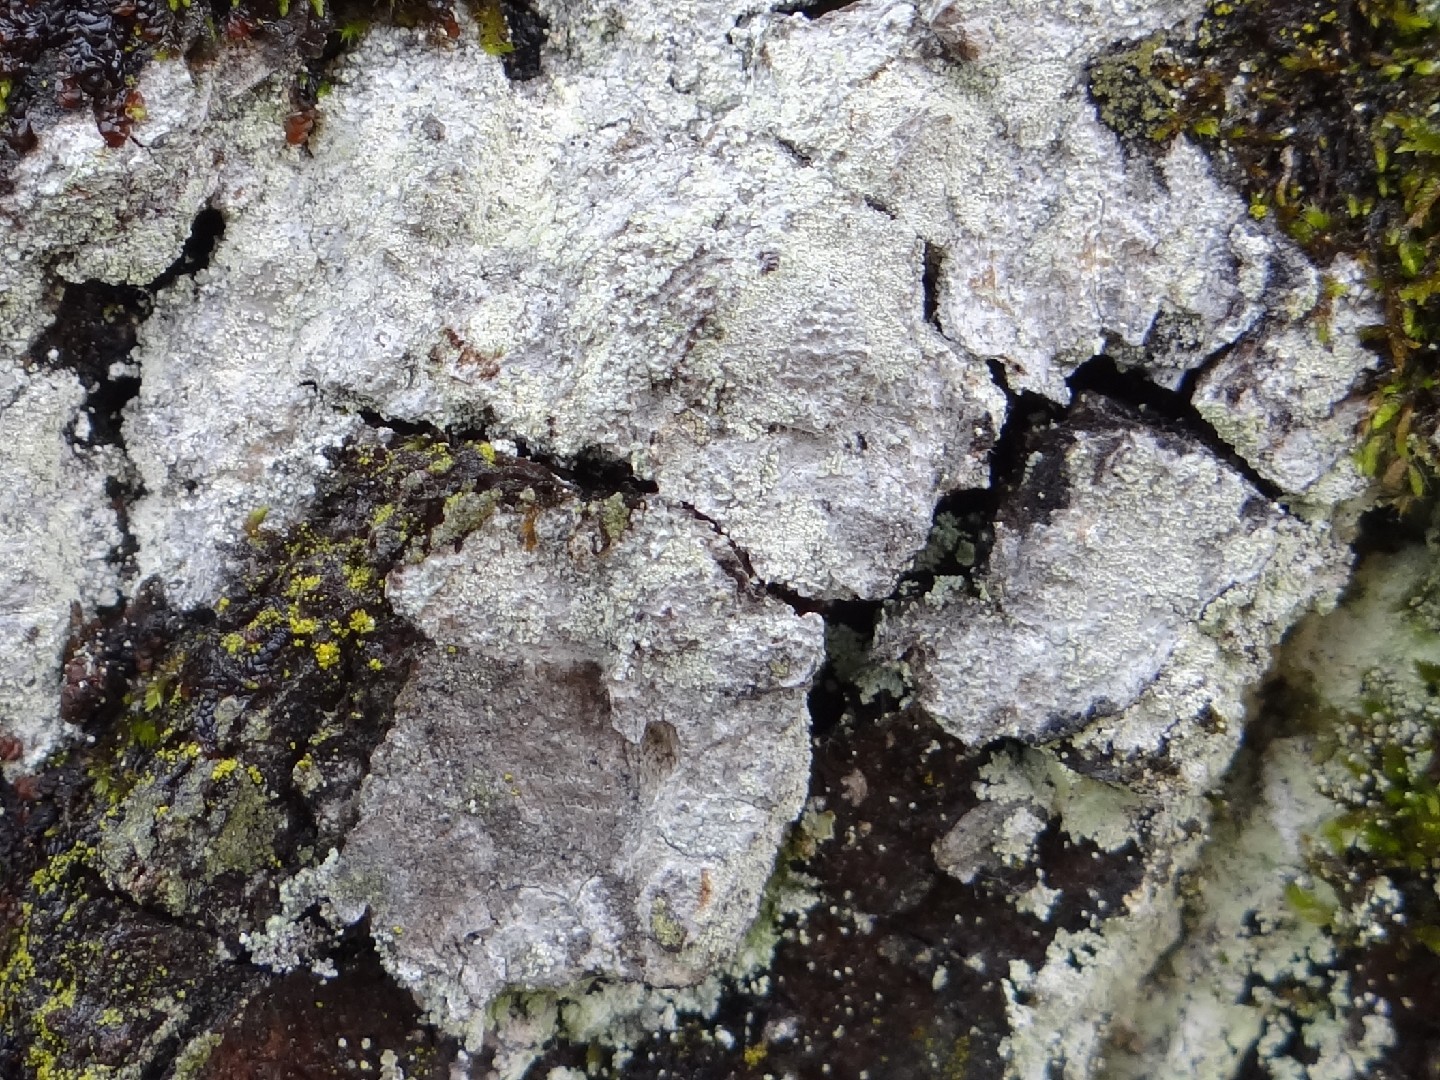 Whitewash lichen